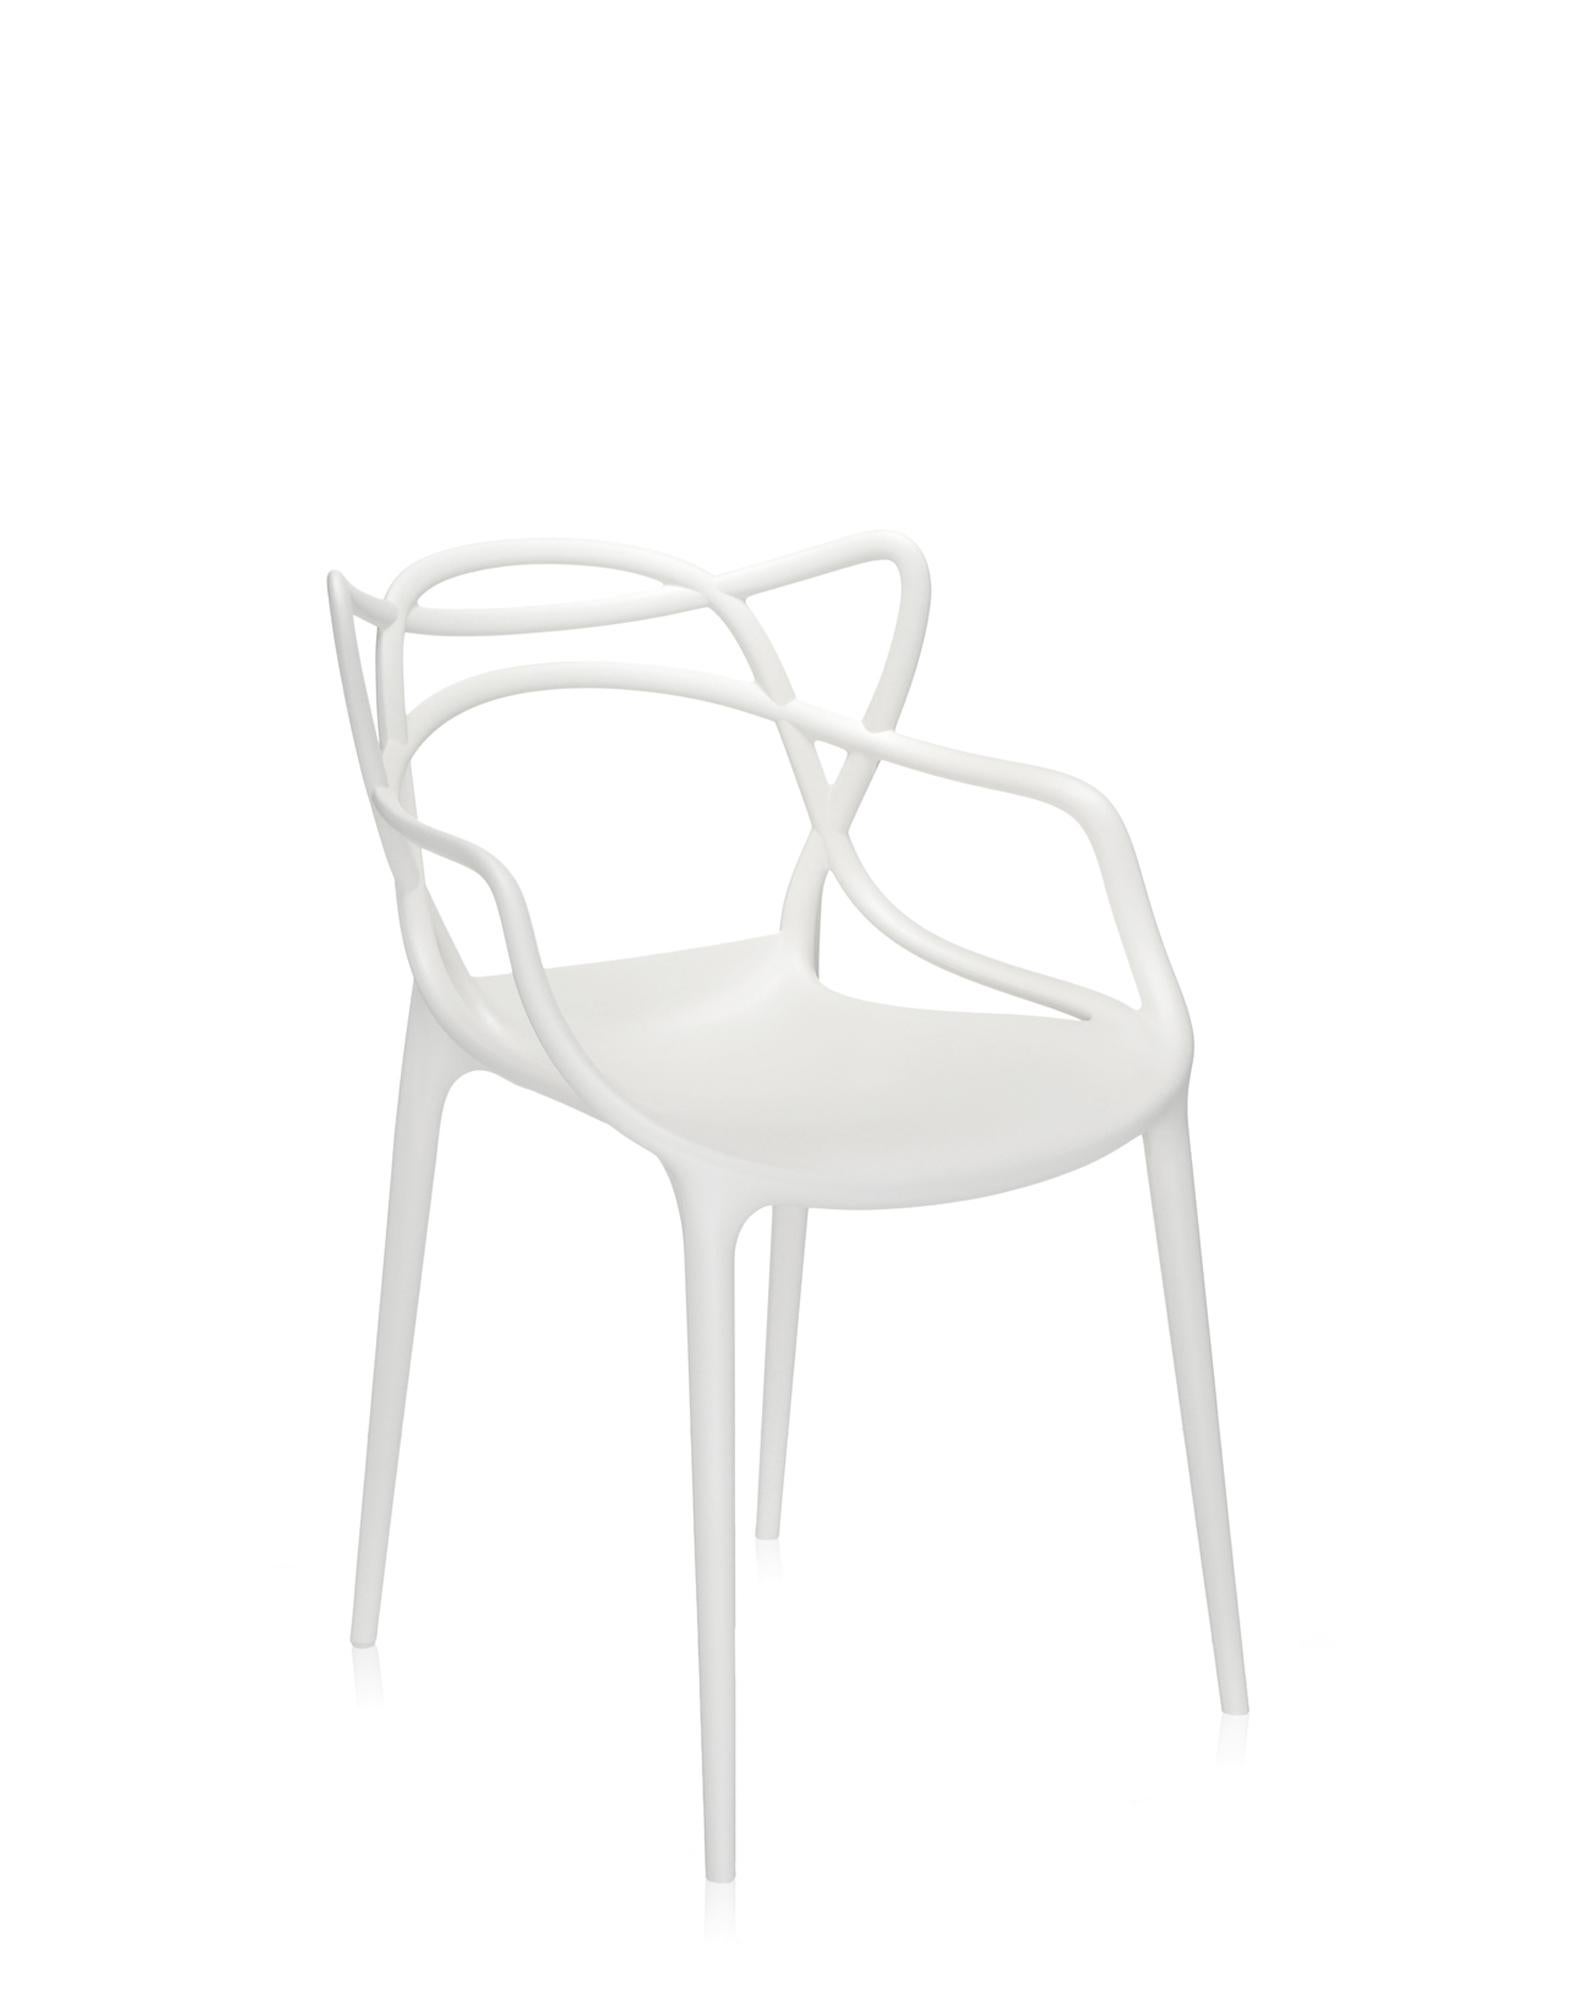 Der Masters Chair ist eine kraftvolle Hommage an drei symbolträchtige Stühle, die vom kreativen Genie Starcks neu gelesen und interpretiert wurden. Die unverwechselbaren Silhouetten der Serie 7 von Arne Jacobsen, des Tulip Armchair von Eero Saarinen